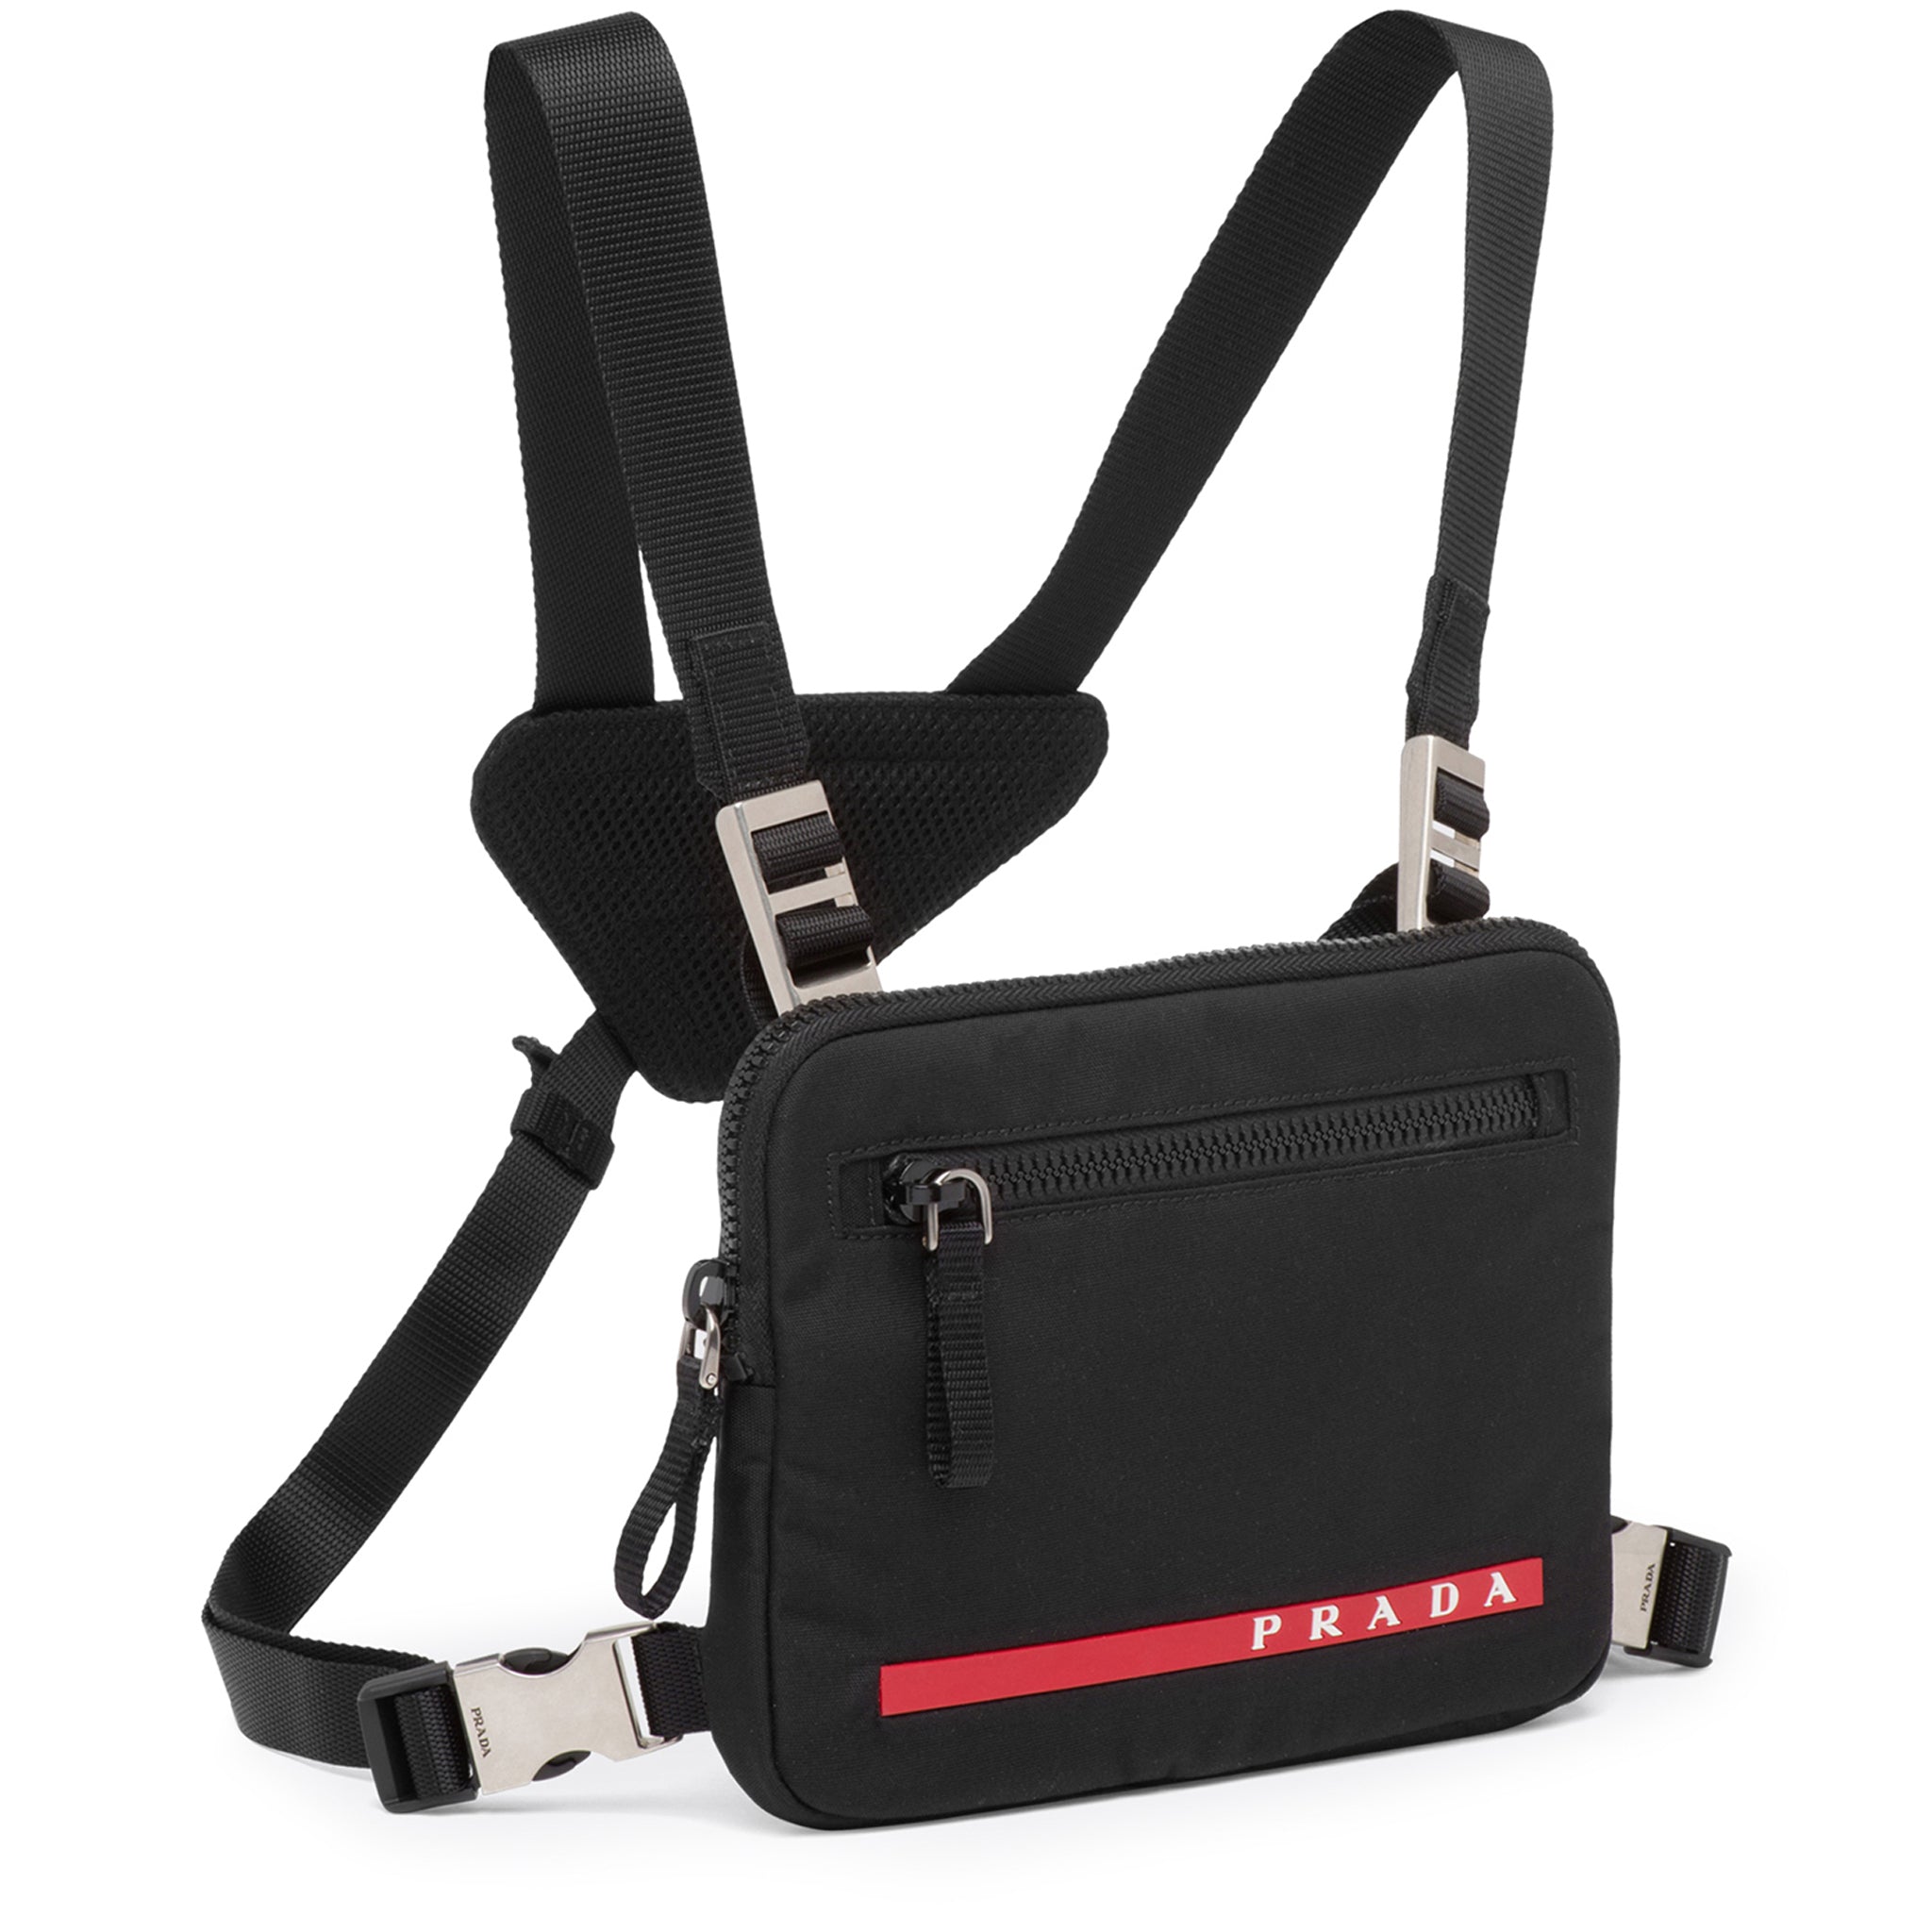 PRADA Leather Outlet Shoulder Bags